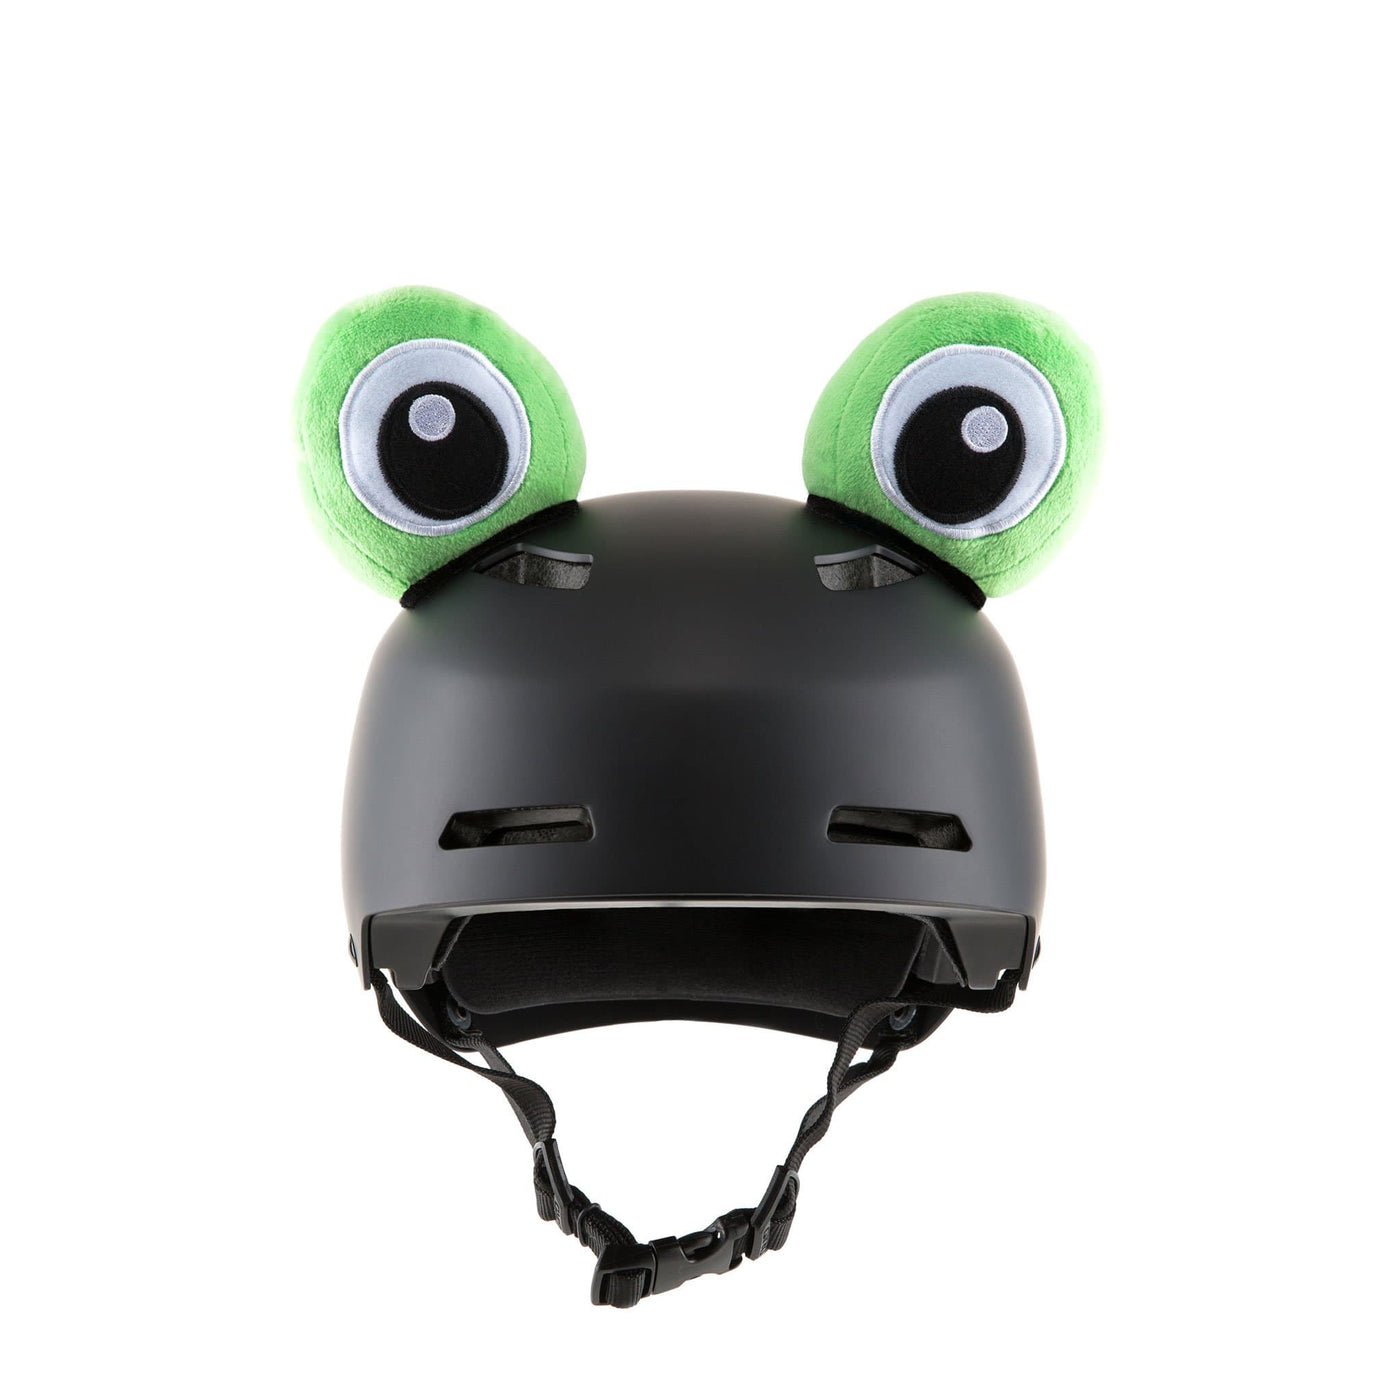 SnowKids Accessories Parawild Green Dargo the Frog Helmet Eyes